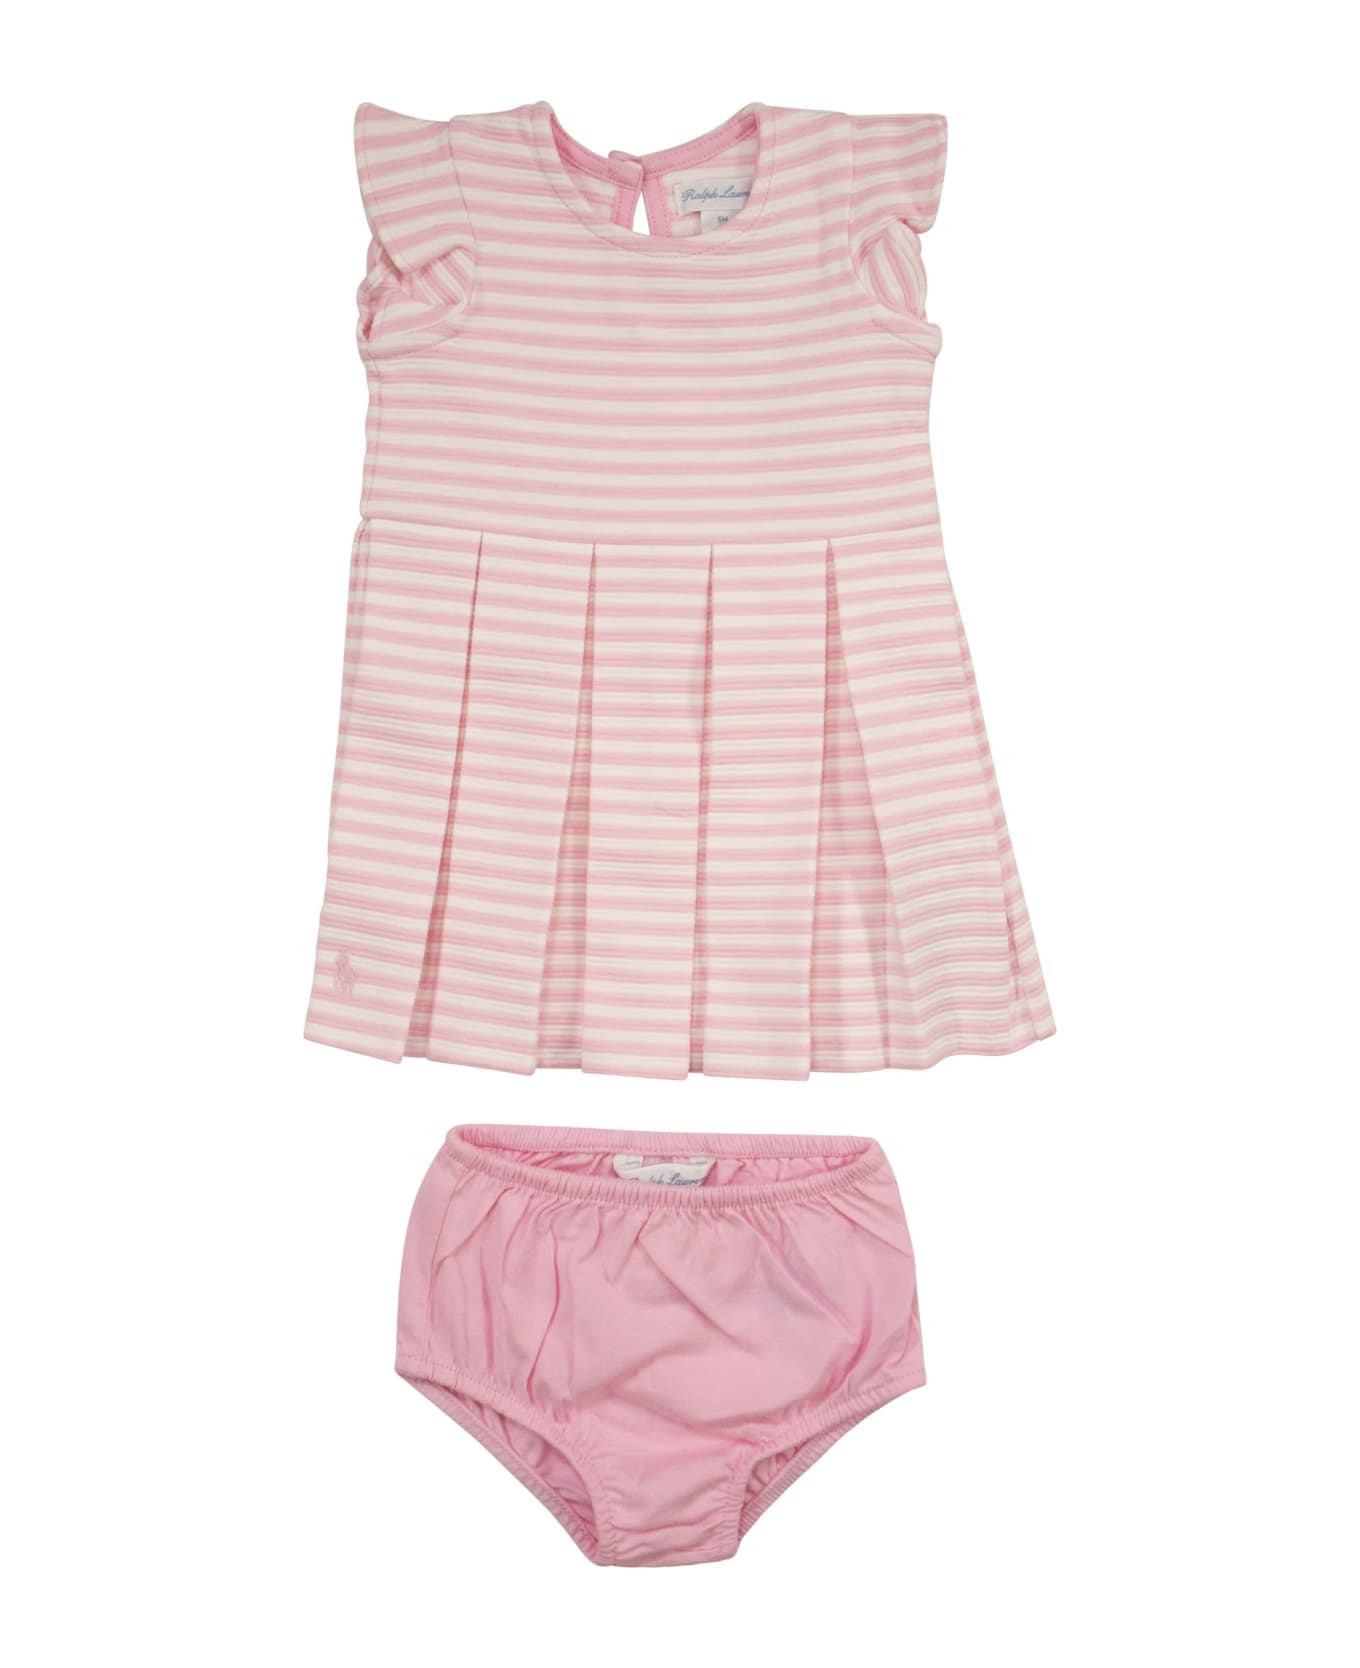 Polo Ralph Lauren Striped Cotton Dress - Pink/white